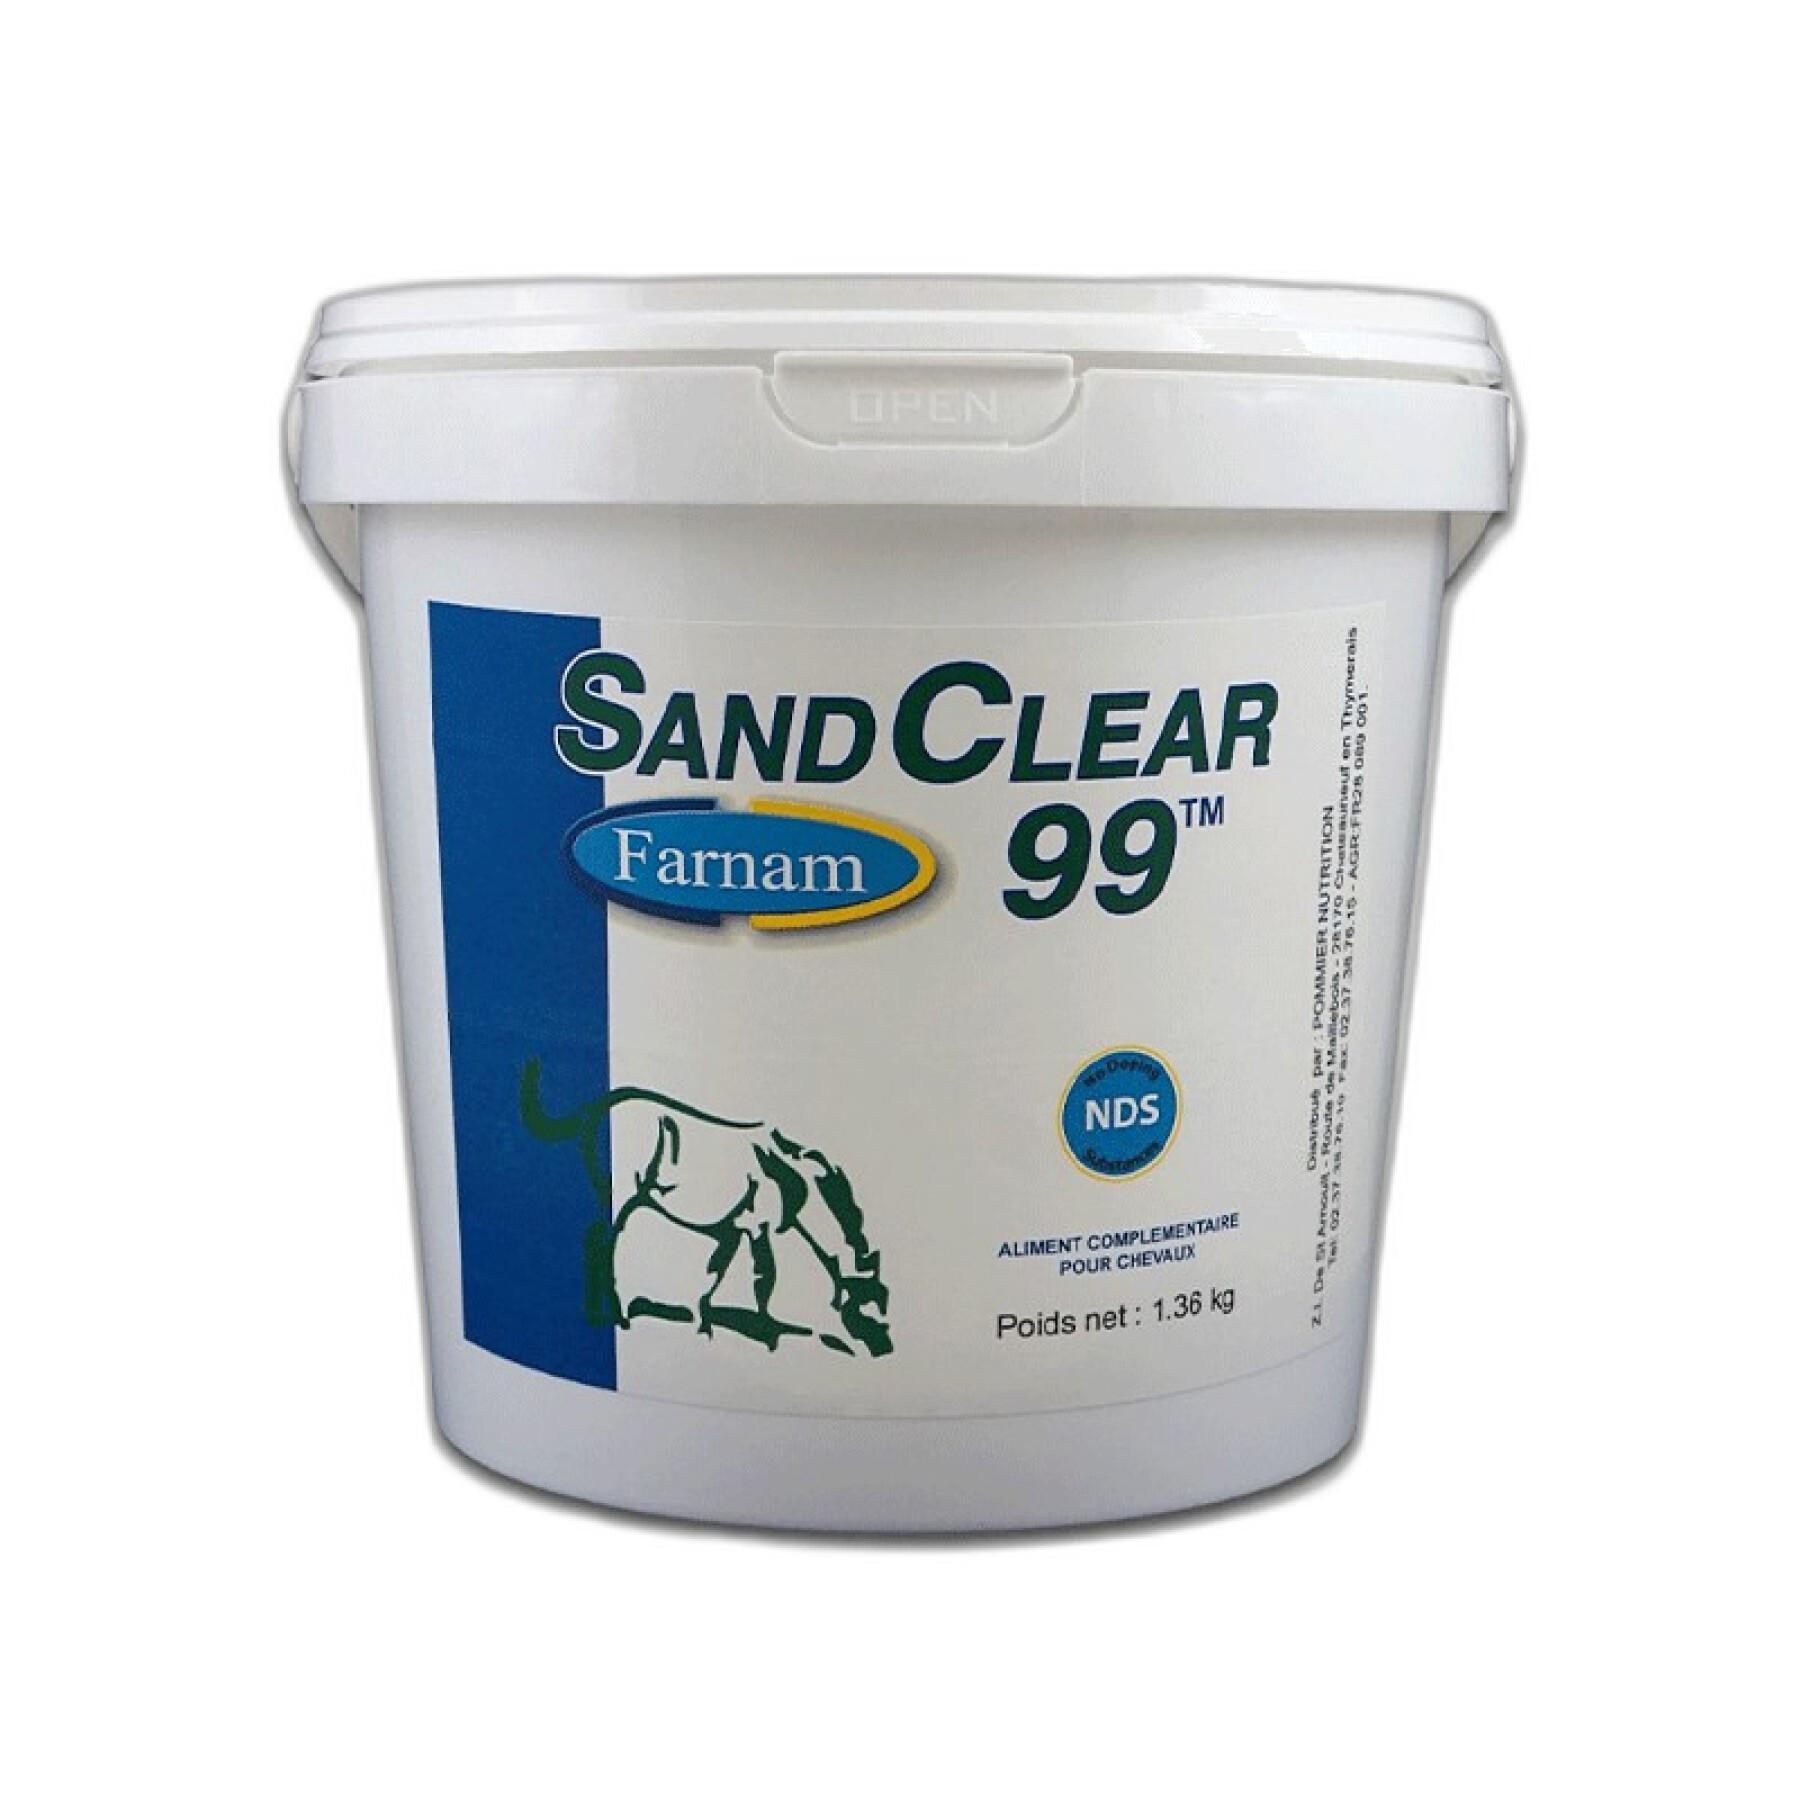 Complemento alimenticio de apoyo articular para caballos Farnam Sand Clear